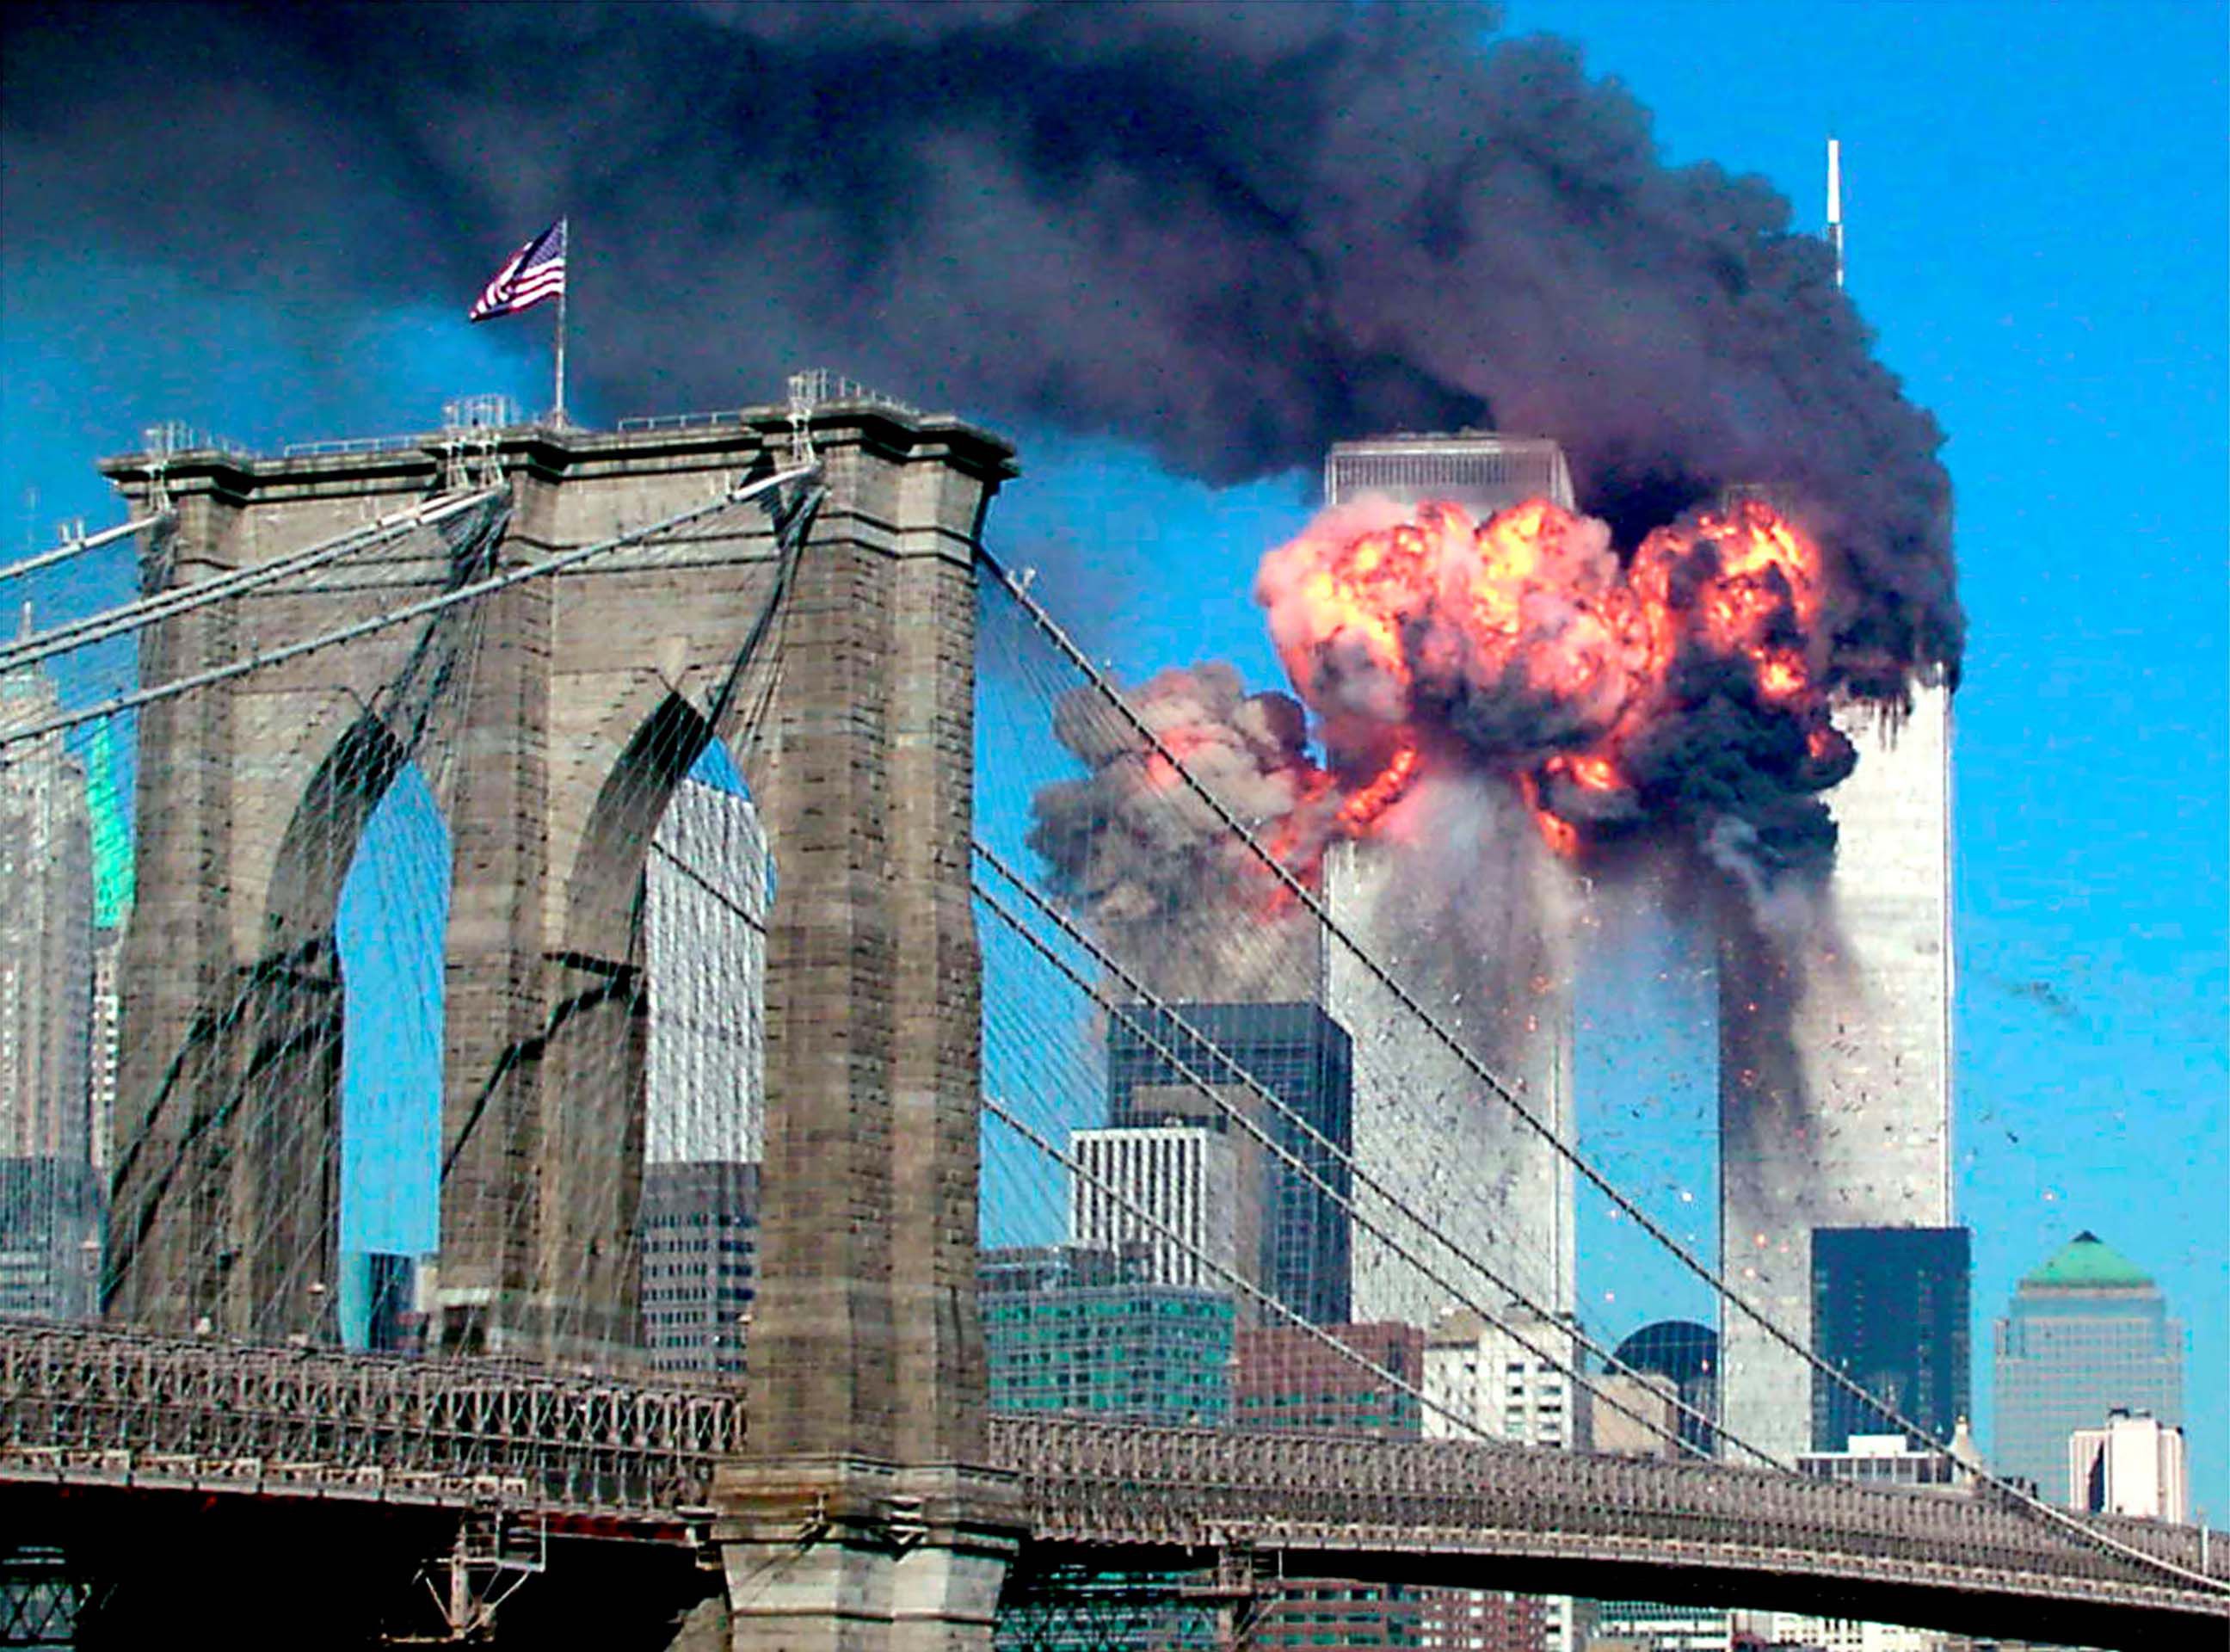 La segunda torre entra en llamas minutos después del impacto. Desde el puente de Brooklyn se veía esta escena, pero todavía se desconocía lo que había pasado. Comenzaban a sonar las alarmas en la ciudad de Nueva York.